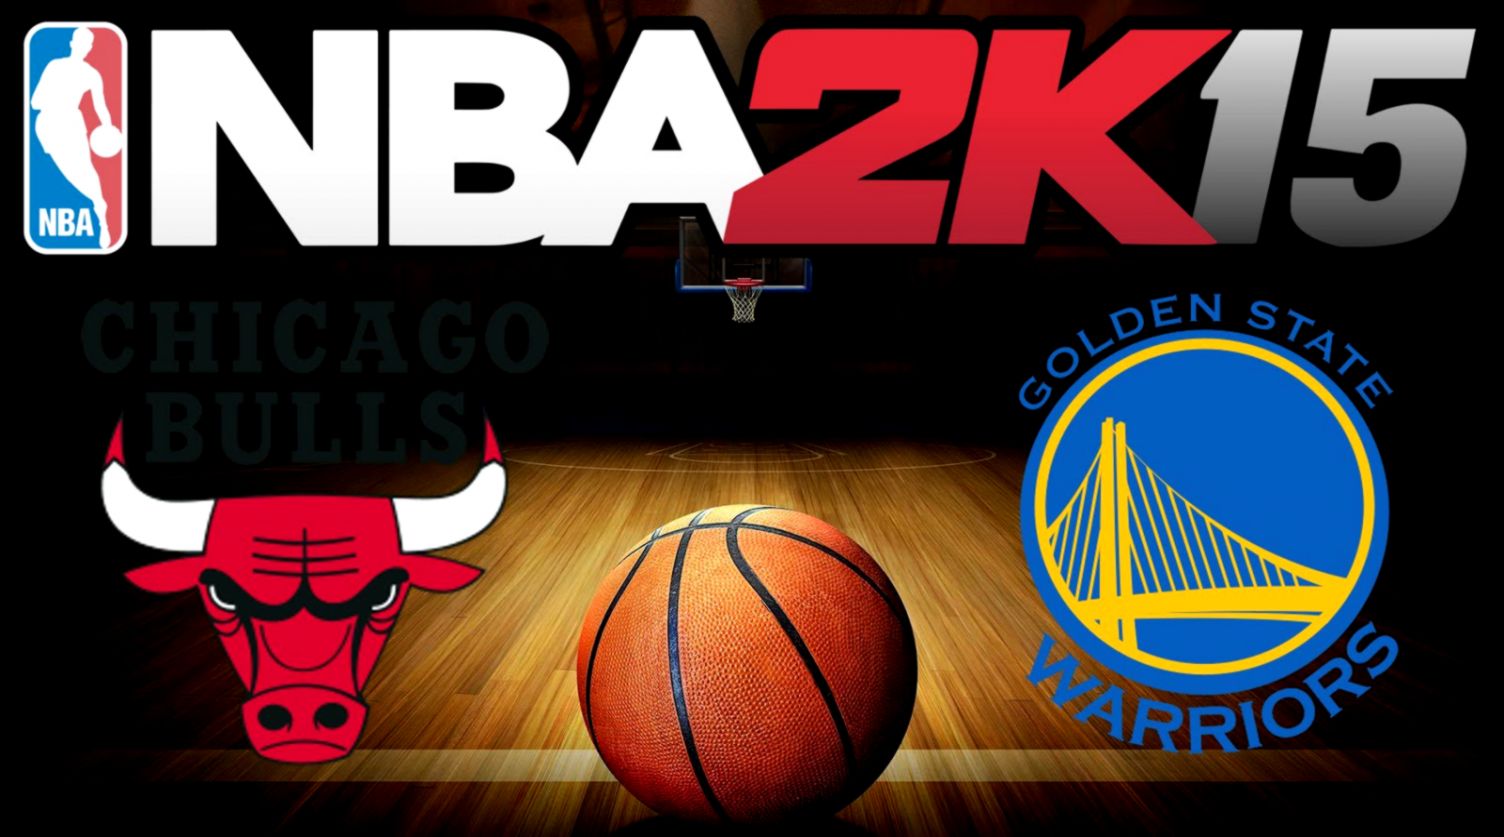 Chicago Bulls vs Golden State Warriors Live Stream